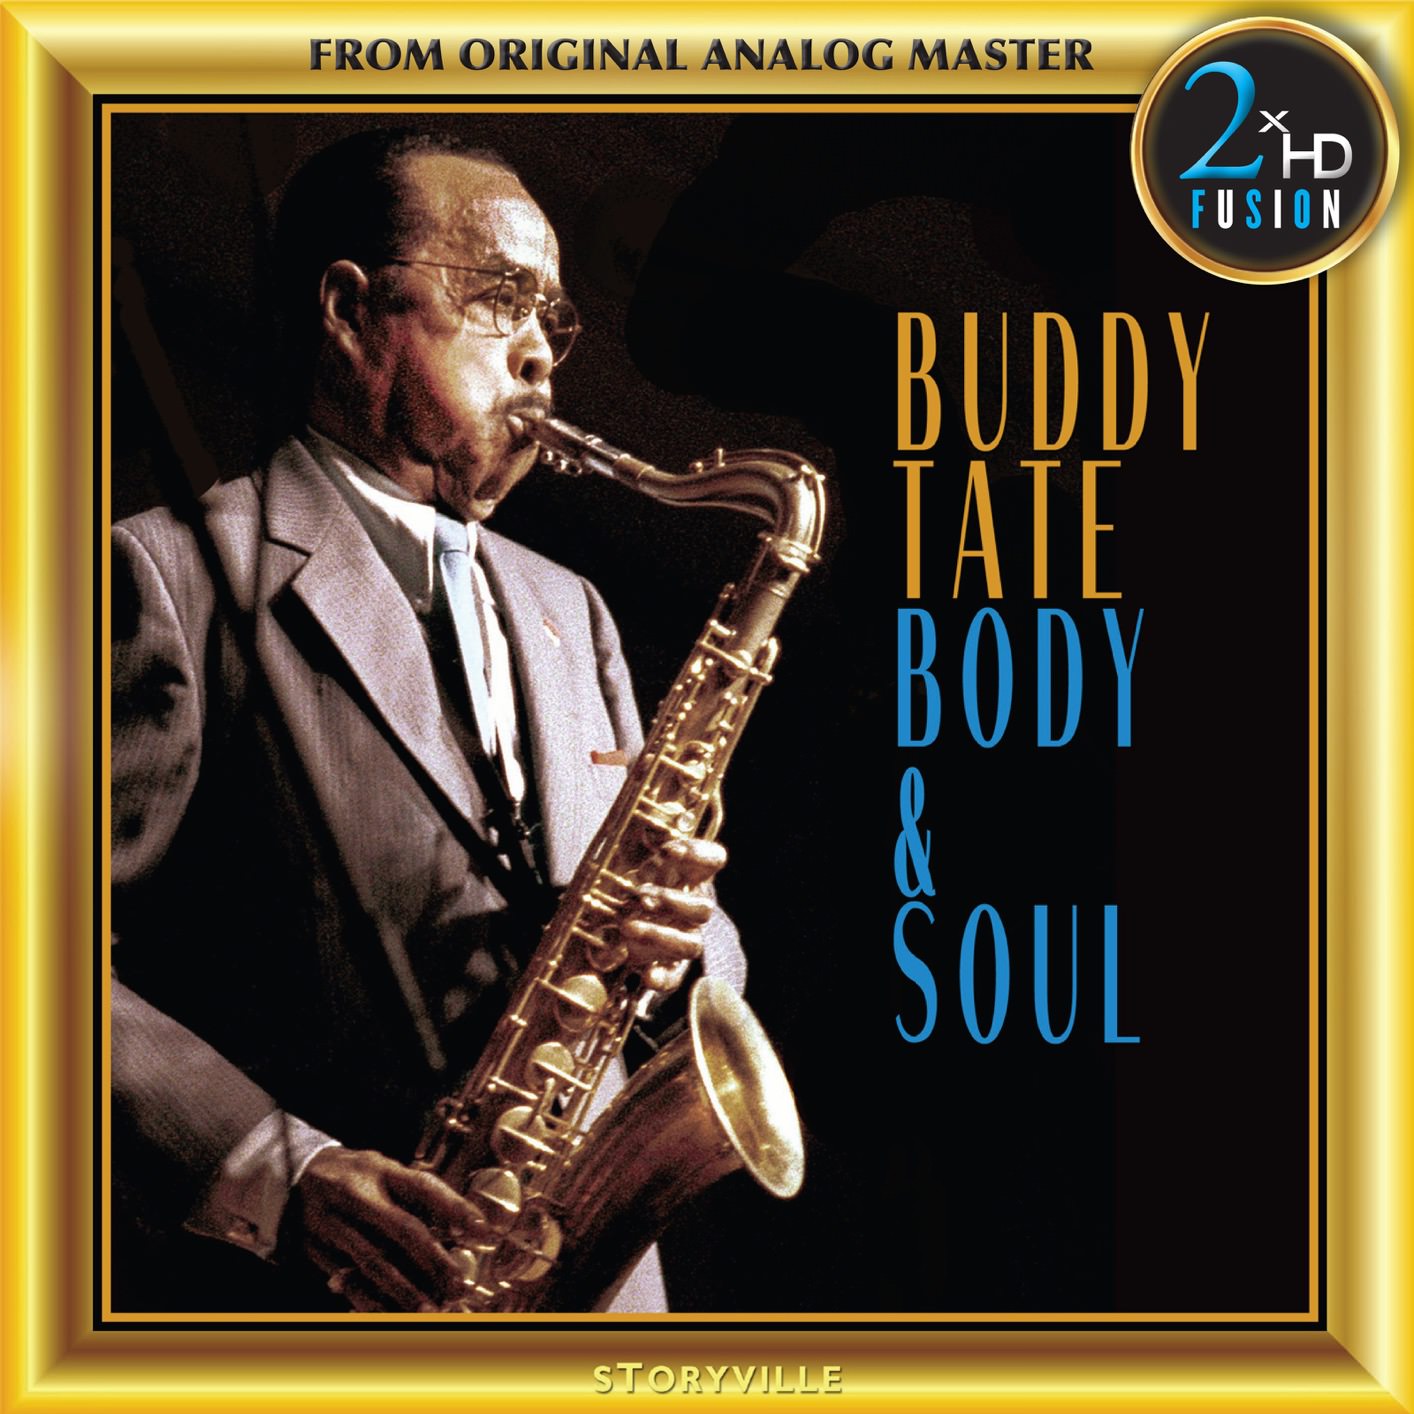 Buddy Tate - Buddy Tate Body and Soul (1975/2018) [FLAC 24bit/192kHz]